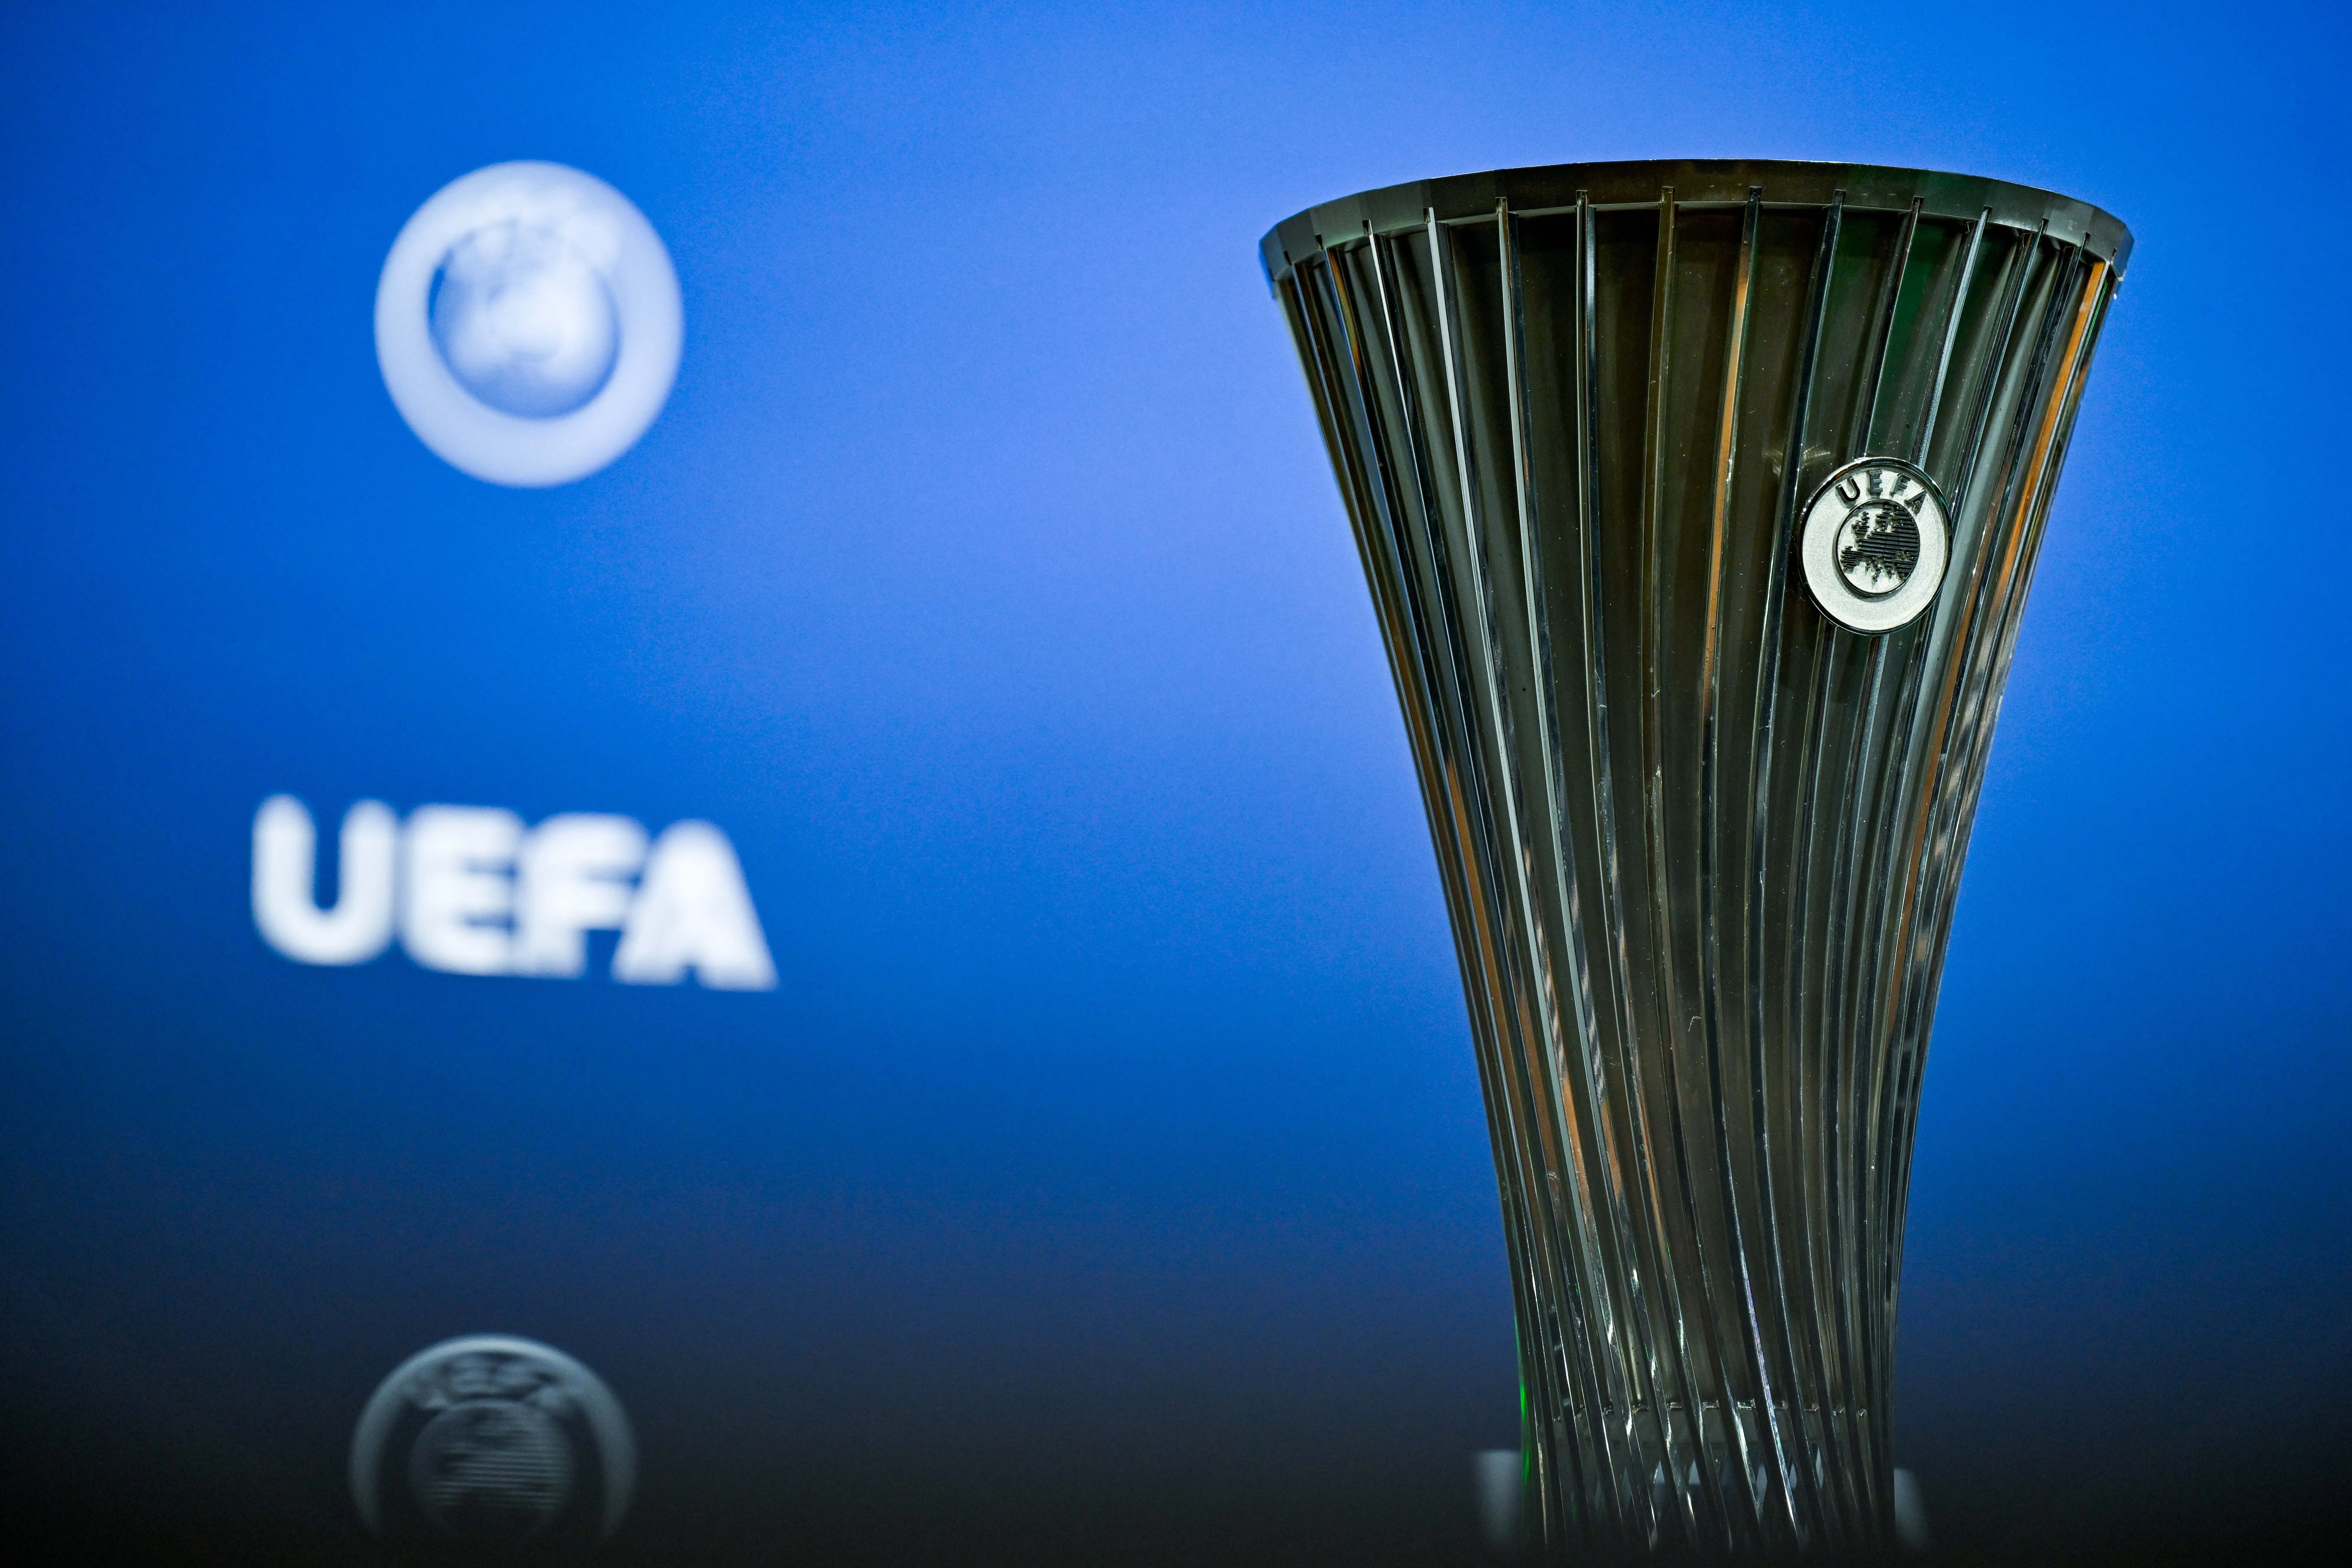 Des paris suspects autour de matchs de qualification pour la Ligue Europa Conférence